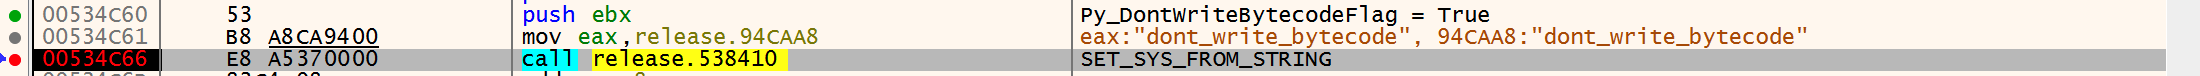 インタープリタをよく調べてみると、sys.dont_write_bytecode変数がtrueに設定されていました。この設定は、モジュールがインポートされたときにバイトコードがディスクに書き出されるのを防止する効果があります。 